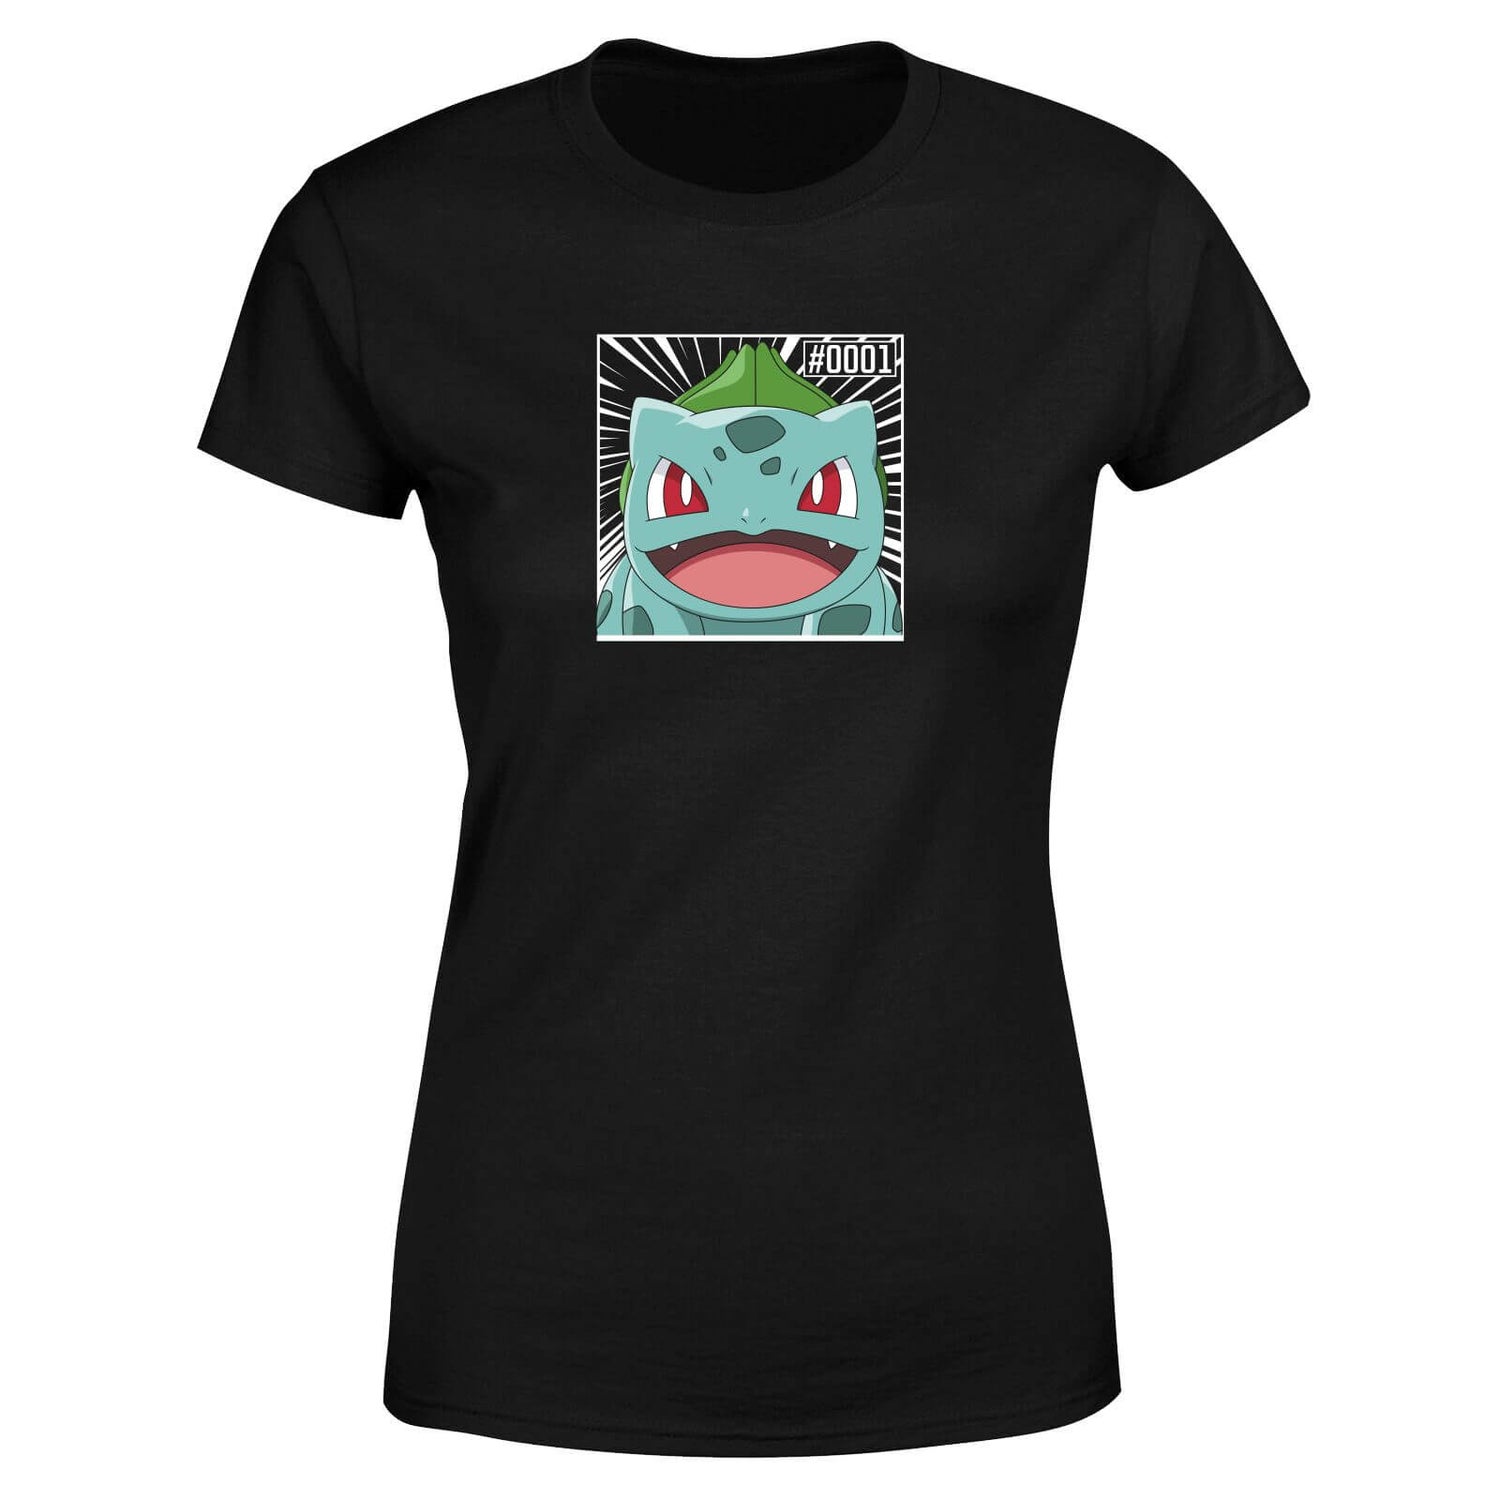 Pokémon Pokédex Bulbasaur #0001 Women's T-Shirt - Black